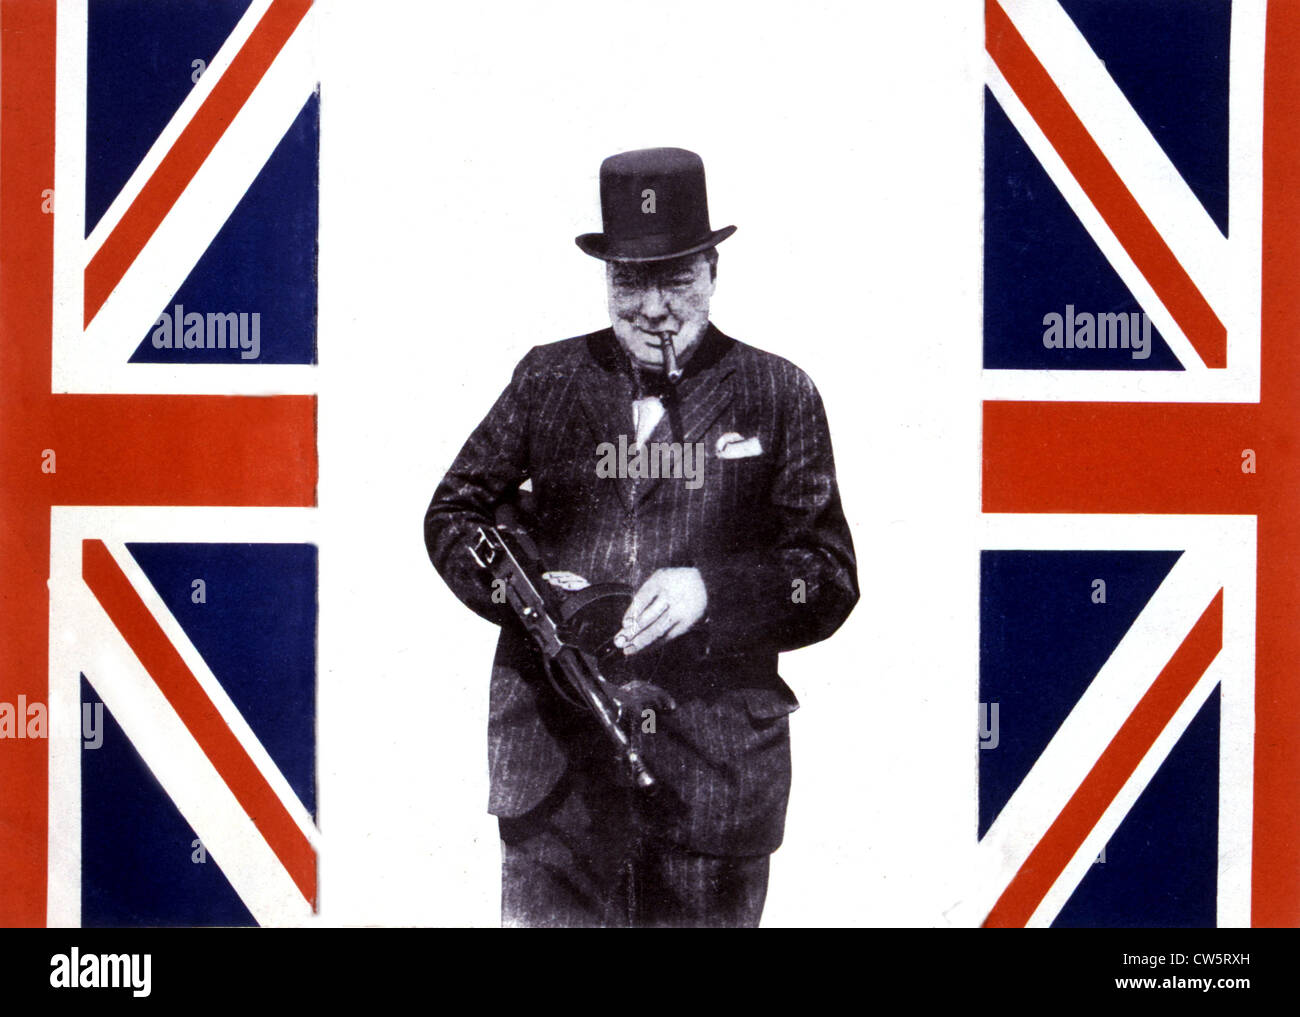 Propaganda leaflet against England Stock Photo